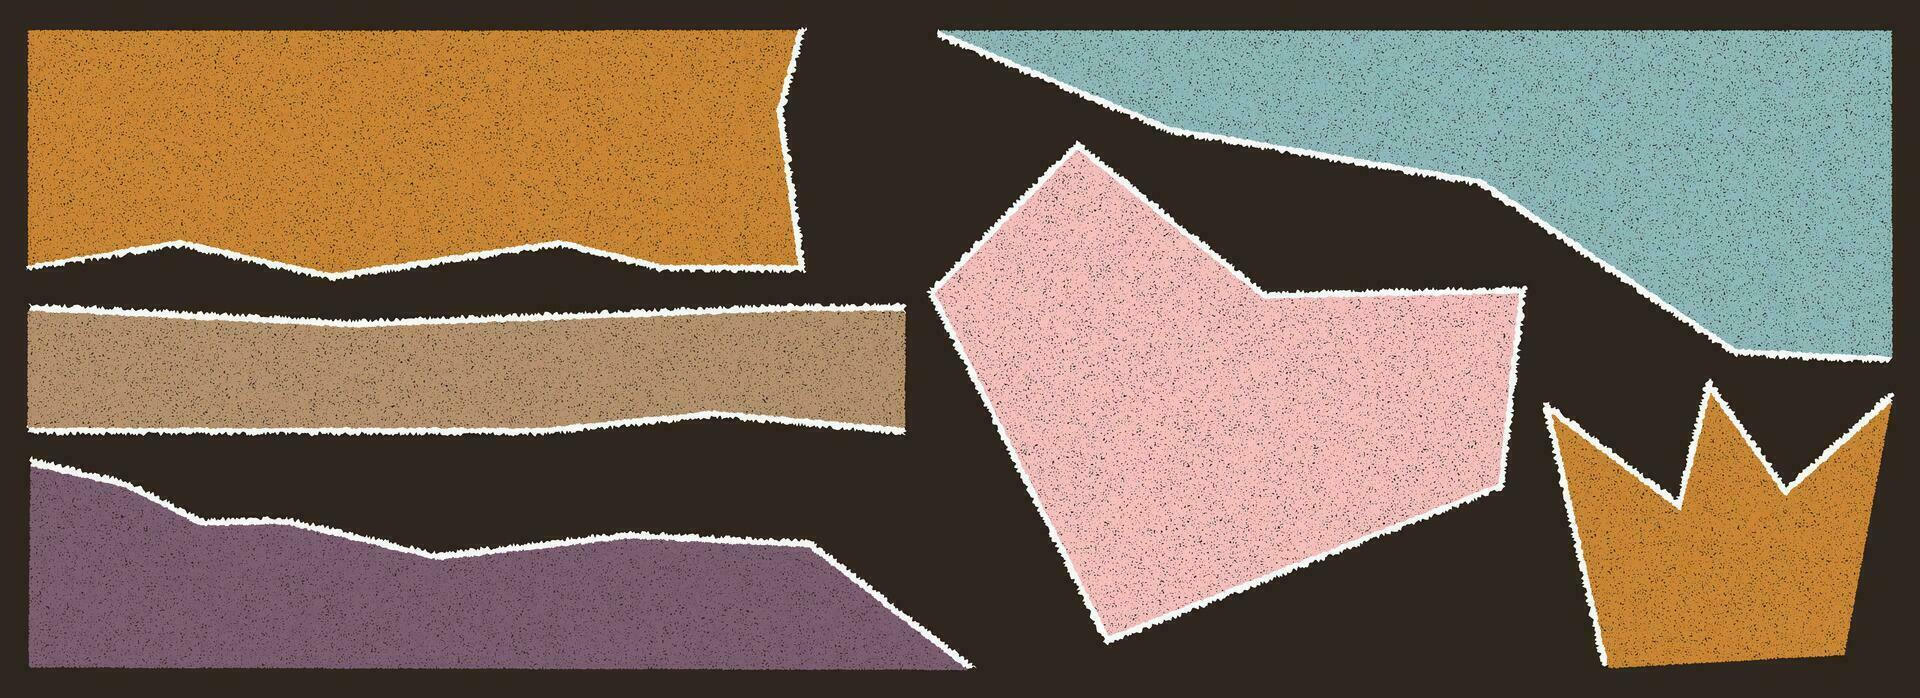 uppsättning av trasig papper av annorlunda färger med spannmål texture.square, hjärta, krona, rektangel och Övrig abstrakt former. trasig, förvrängd, skarp former för retro collage. vektor